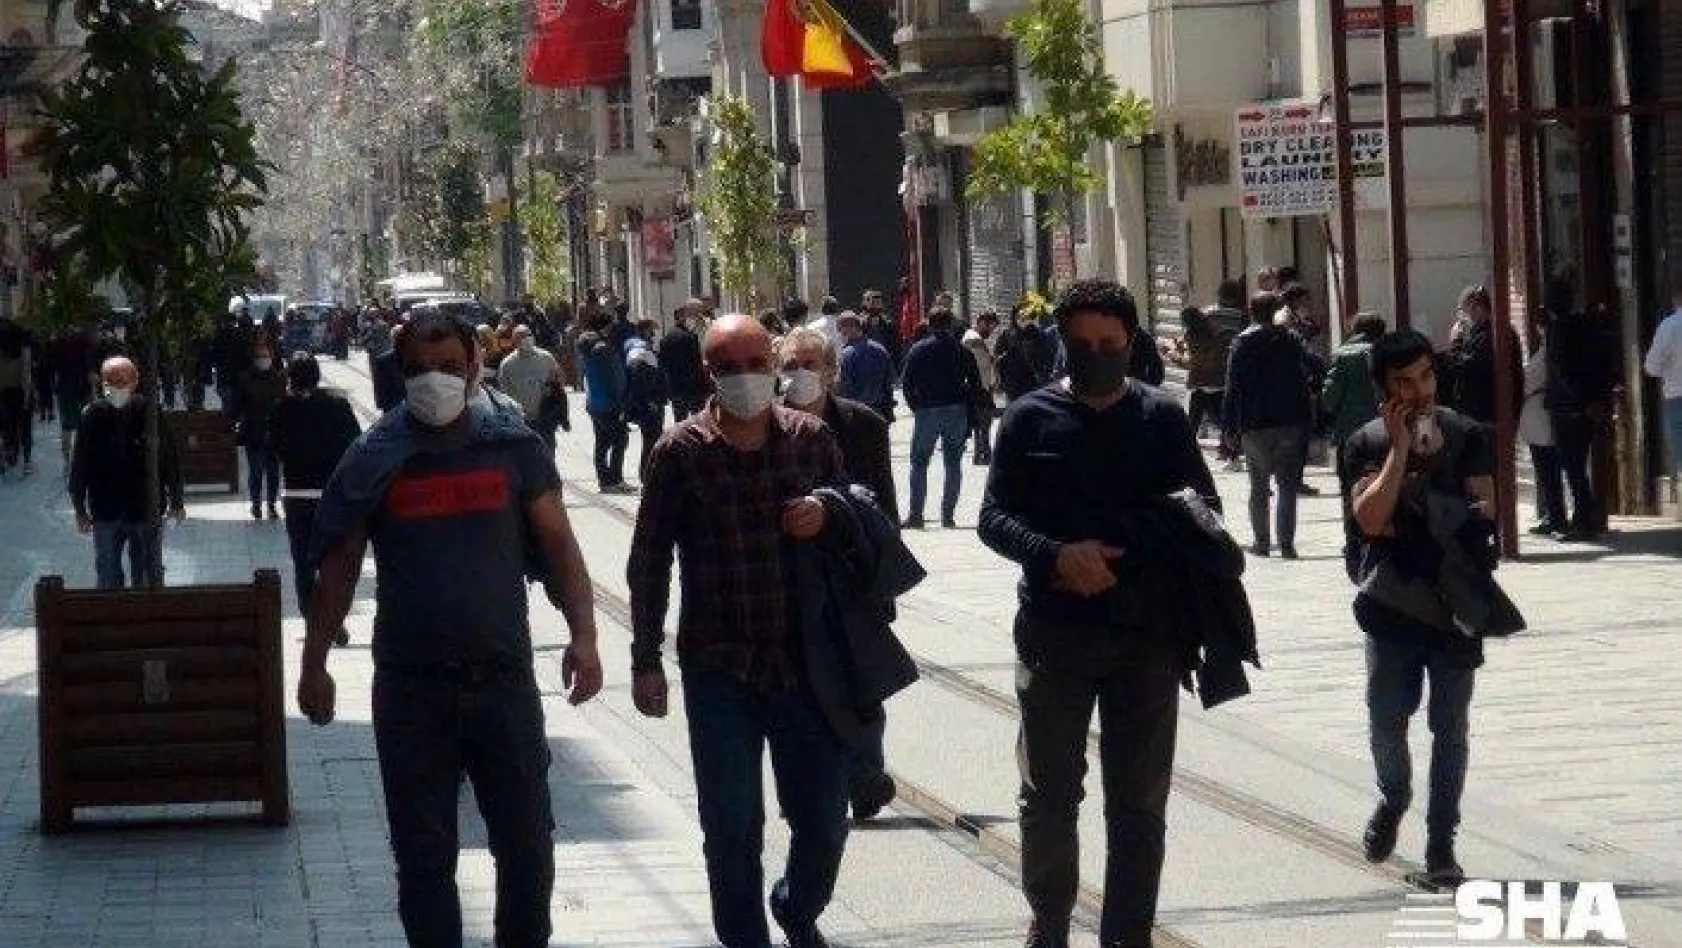 (Özel) Taksim'de yunuslar maskesiz dolaşanlara göz açtırmıyor